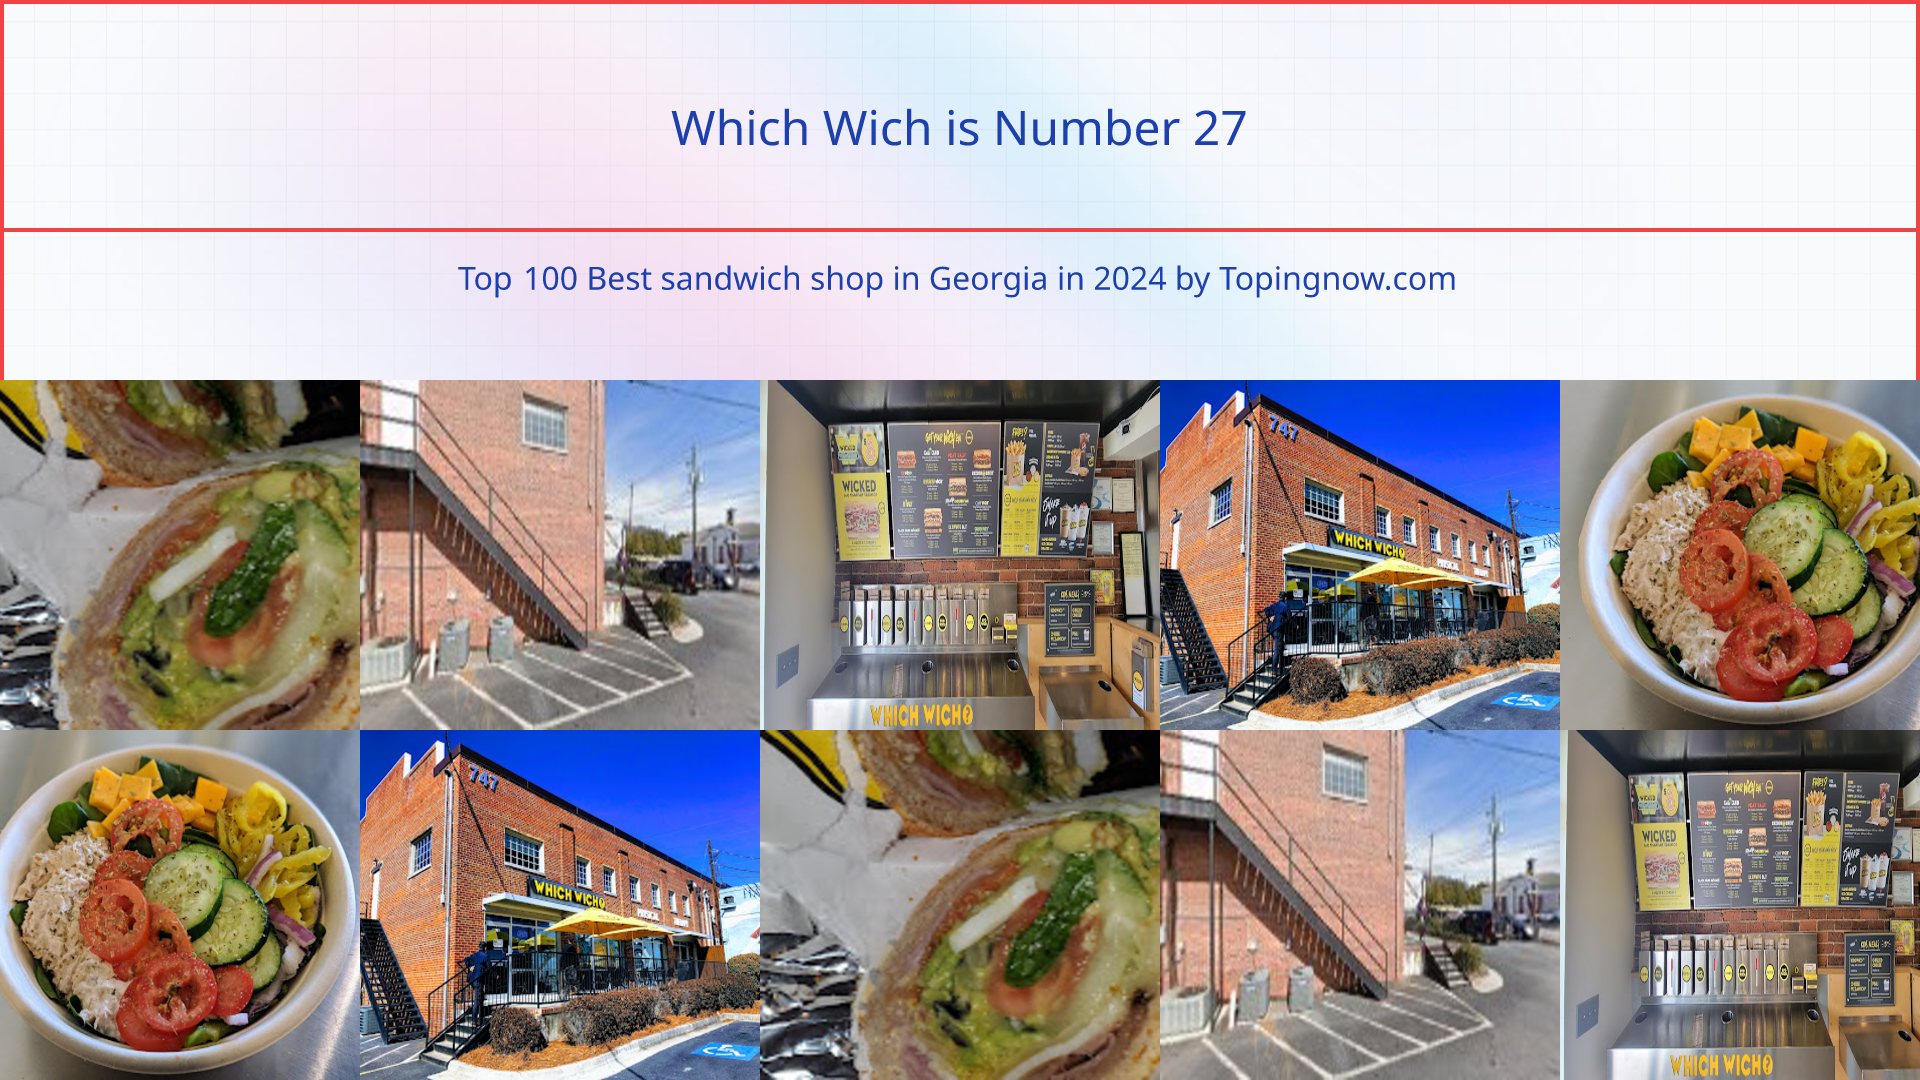 Which Wich: Top 100 Best sandwich shop in Georgia in 2024